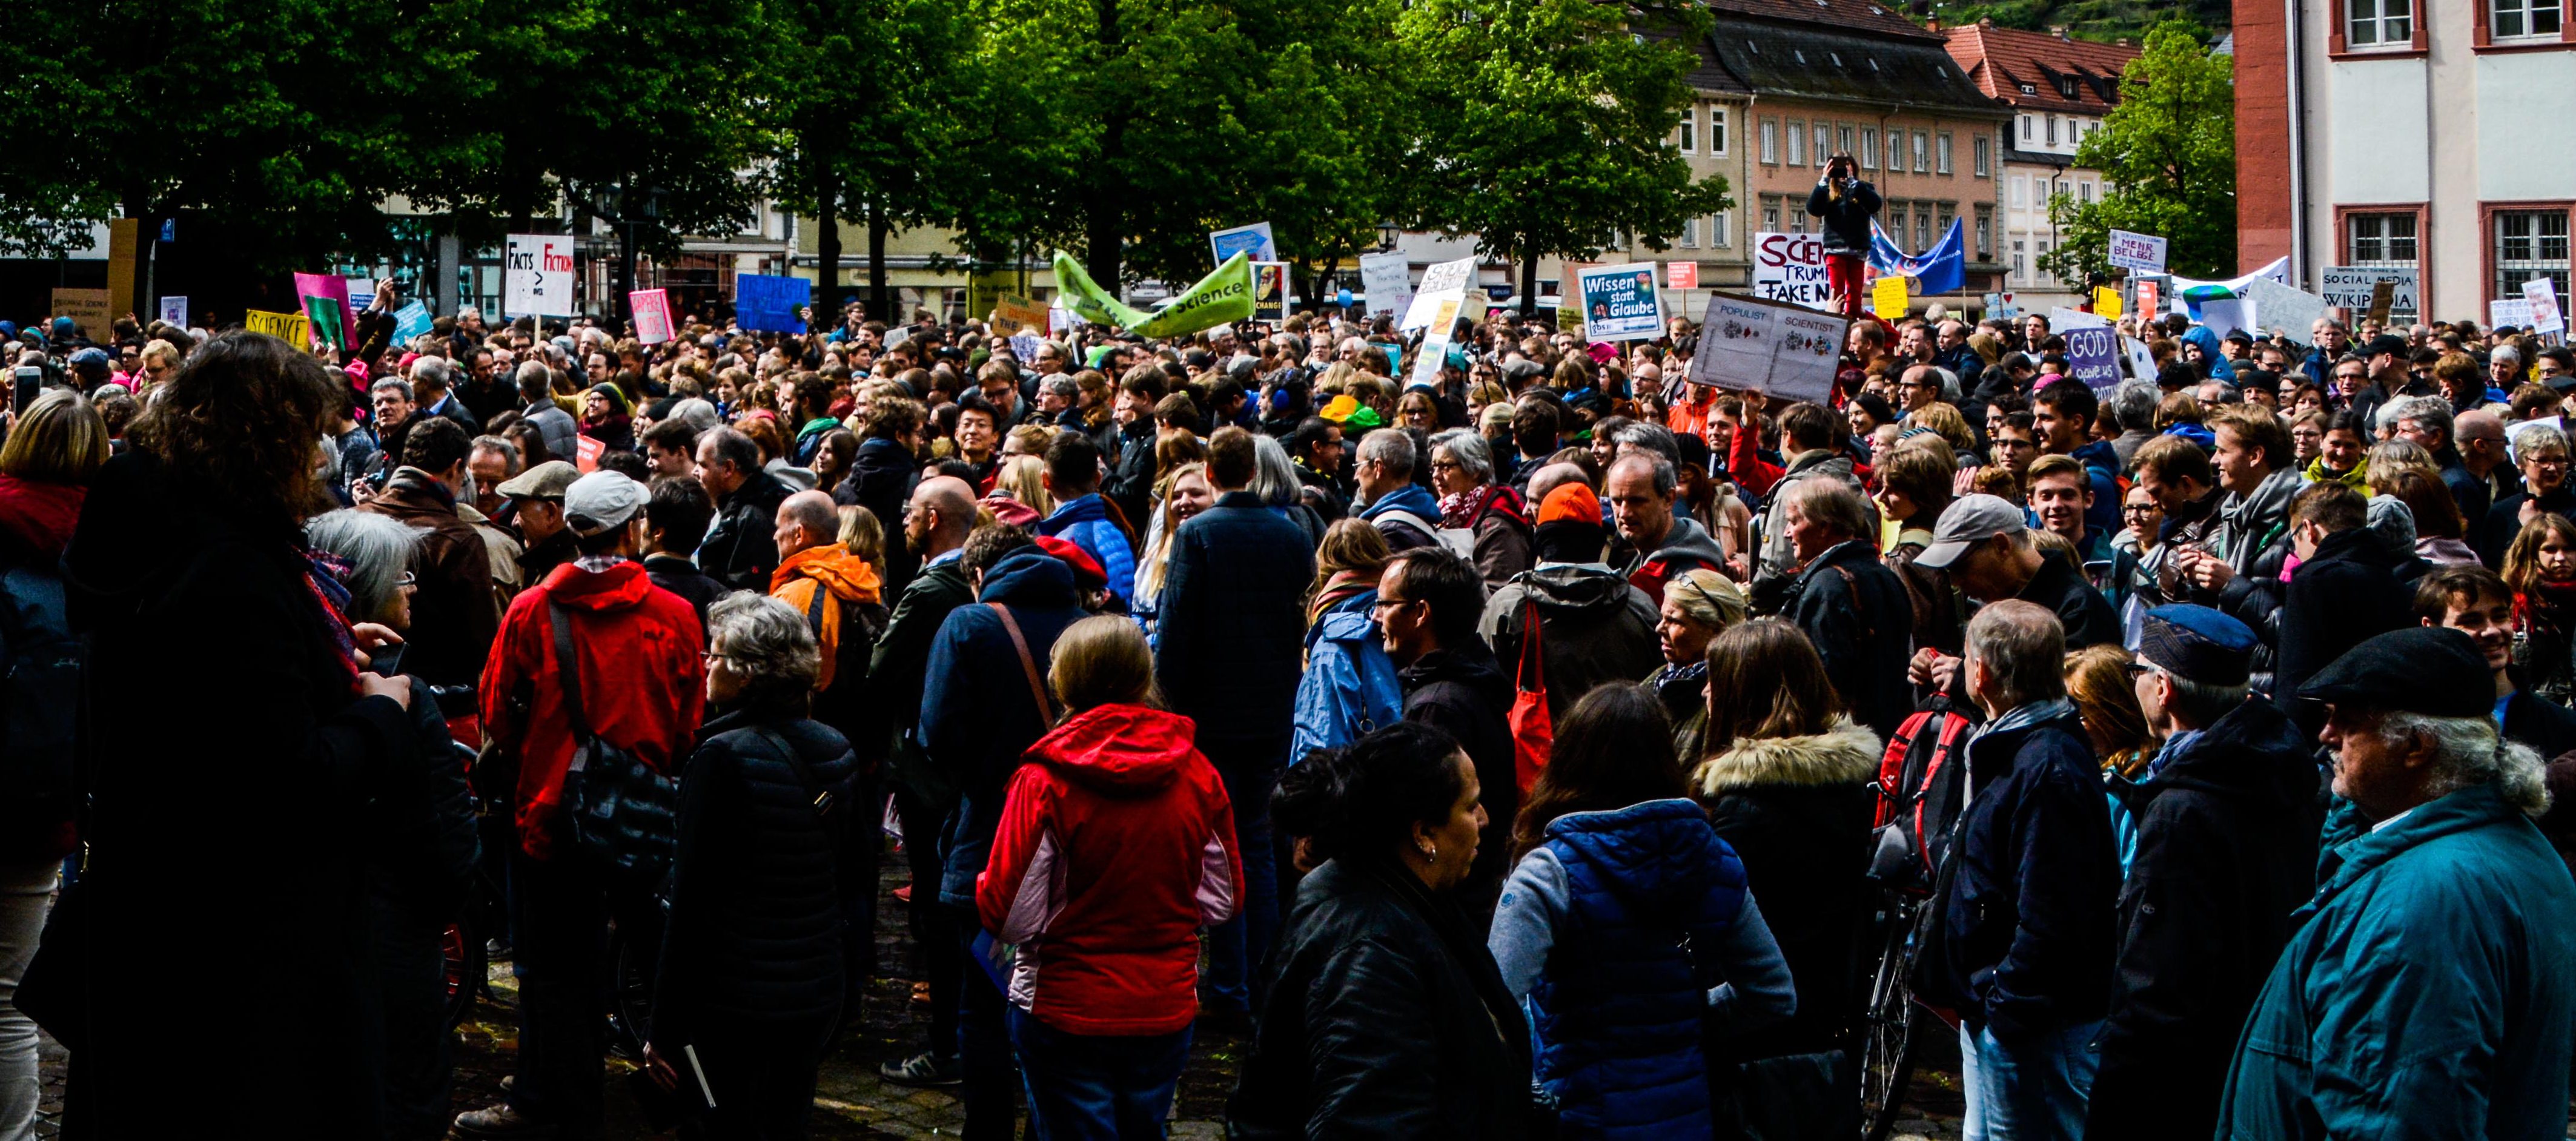 Am Ende des Marsches versammelten sich die Teilnehmer auf dem Universitätsplatz. (Bild: Phillip Hiller)